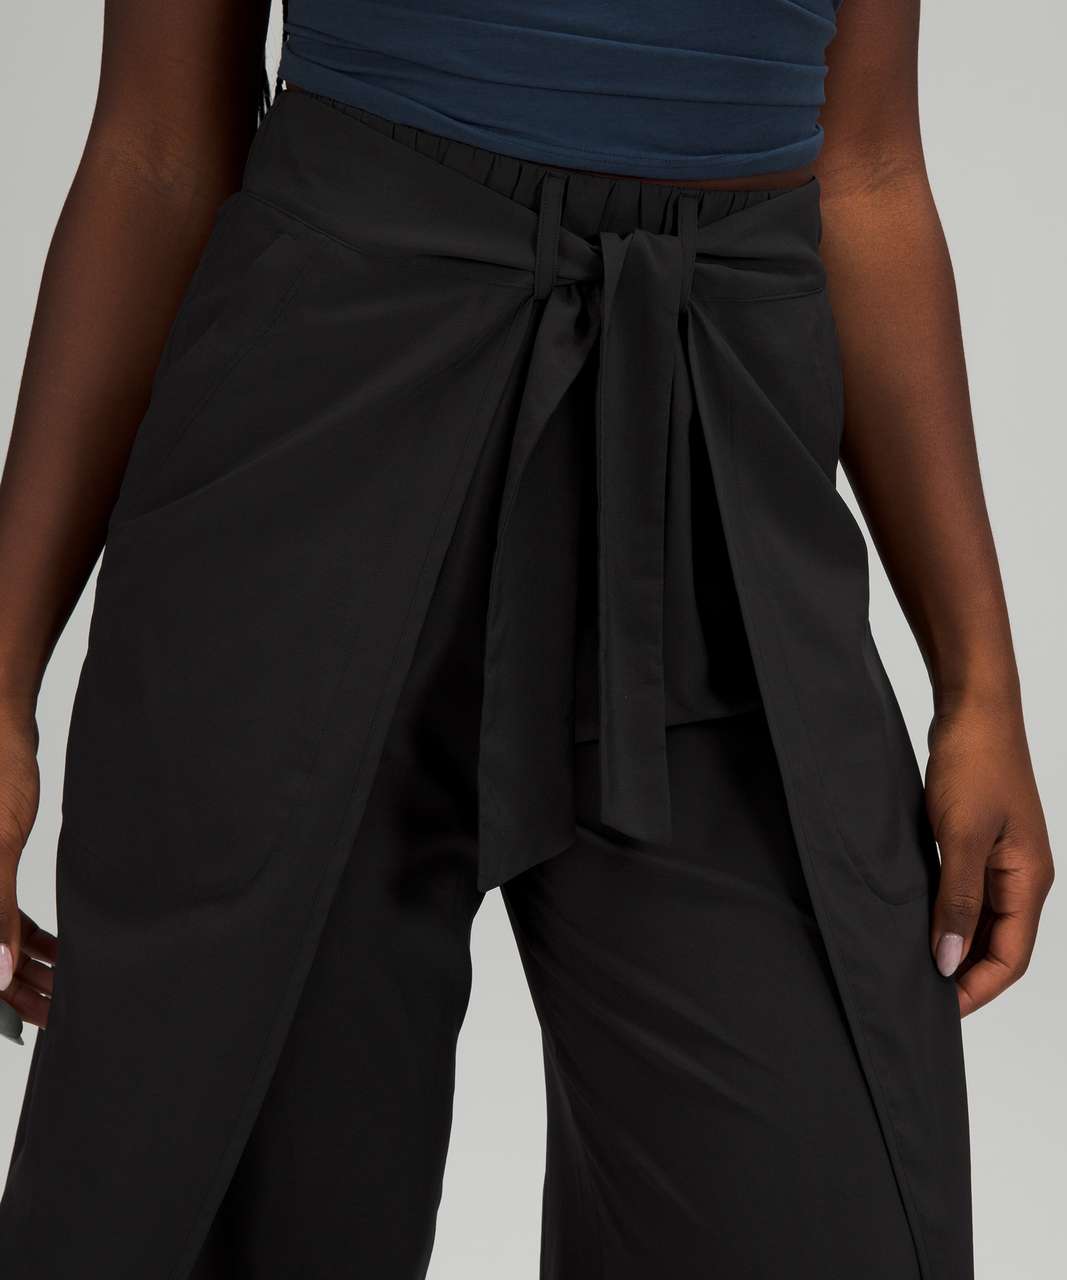 lululemon Black pants women size 2 Asymmetrical Faux Wrap Front Slouchy